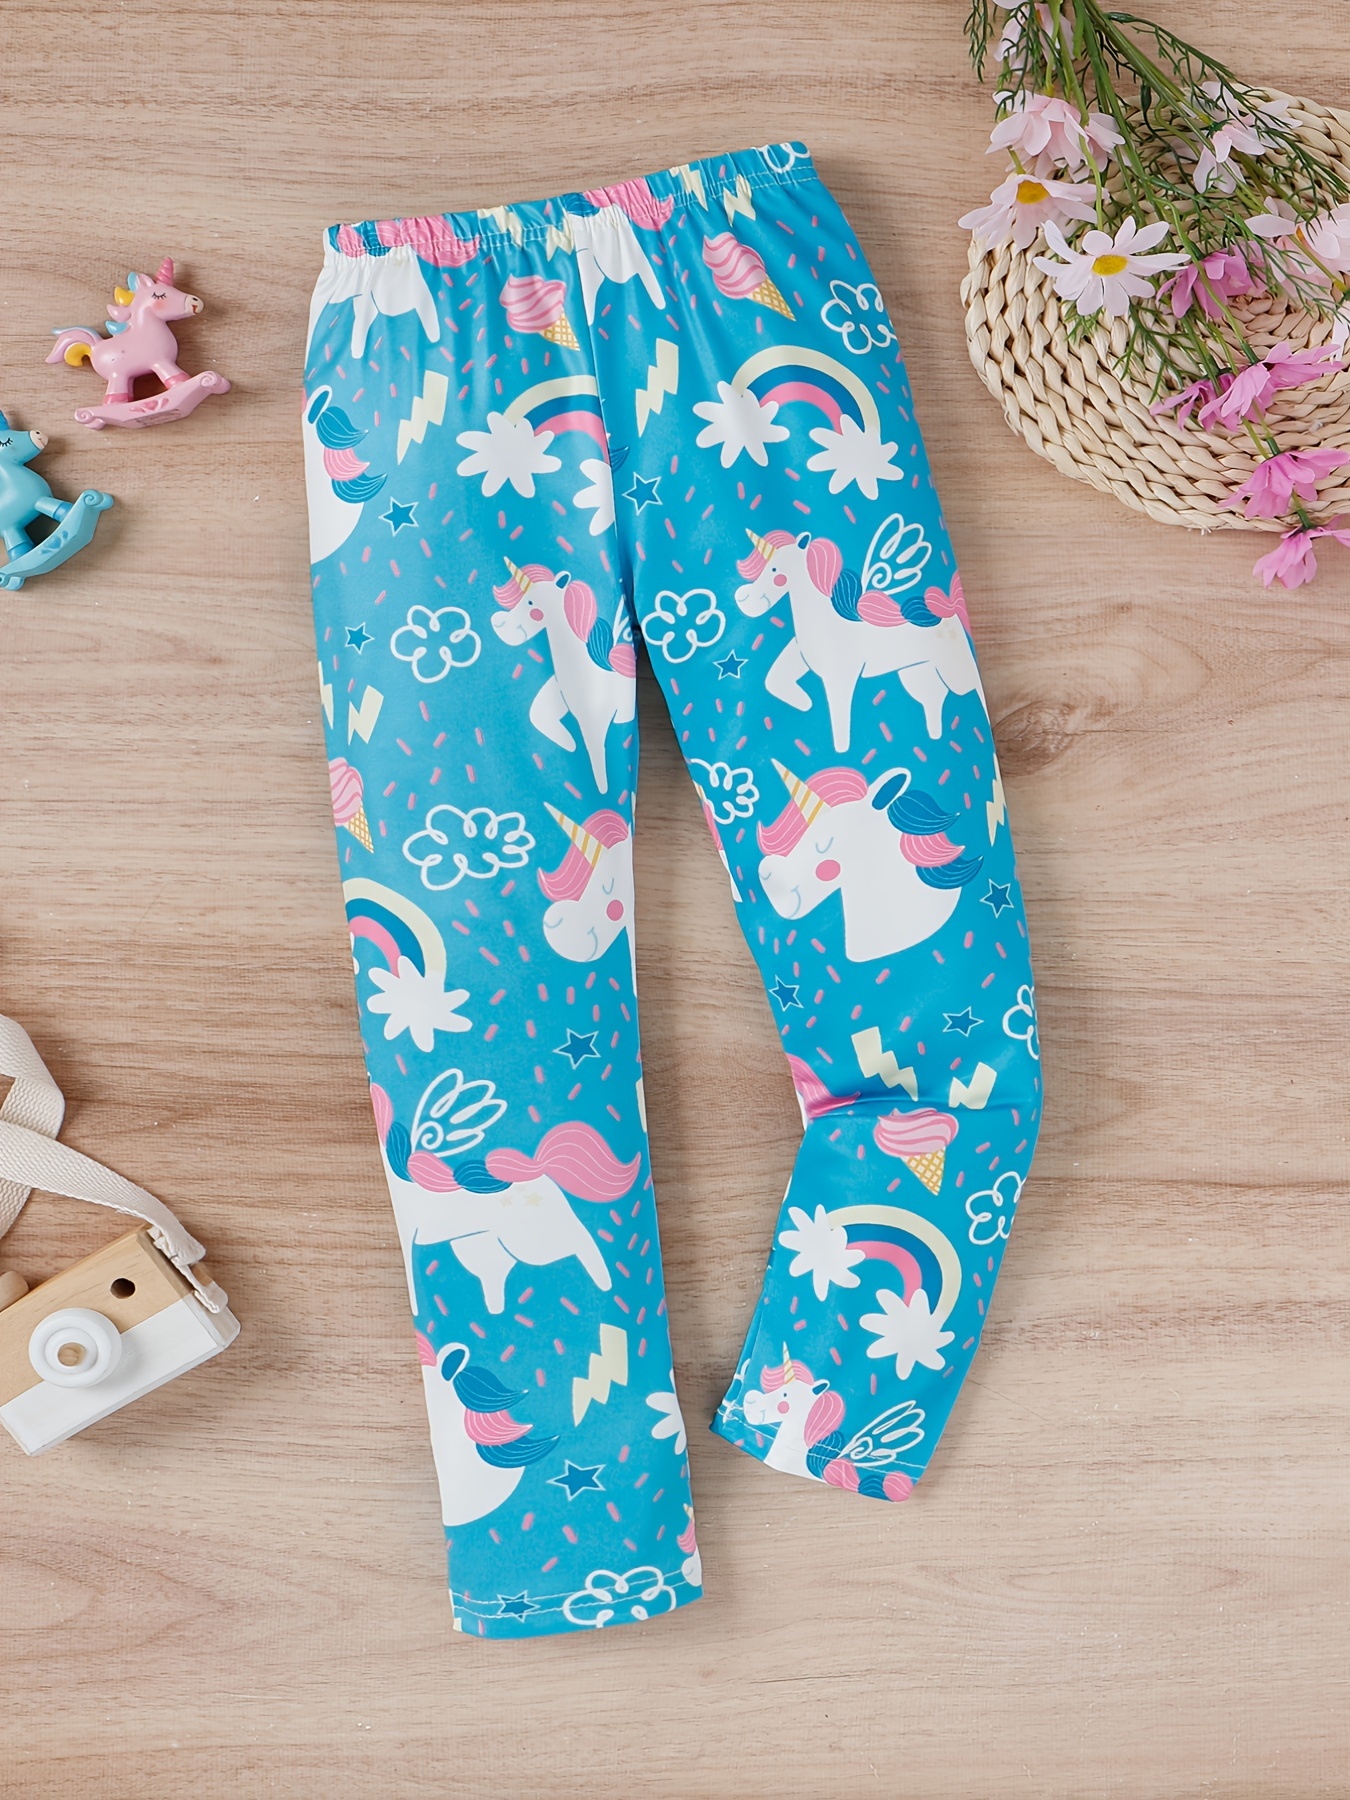 Diseño de leggings de mujer con motivos: unicornio En las compras al por  mayor !